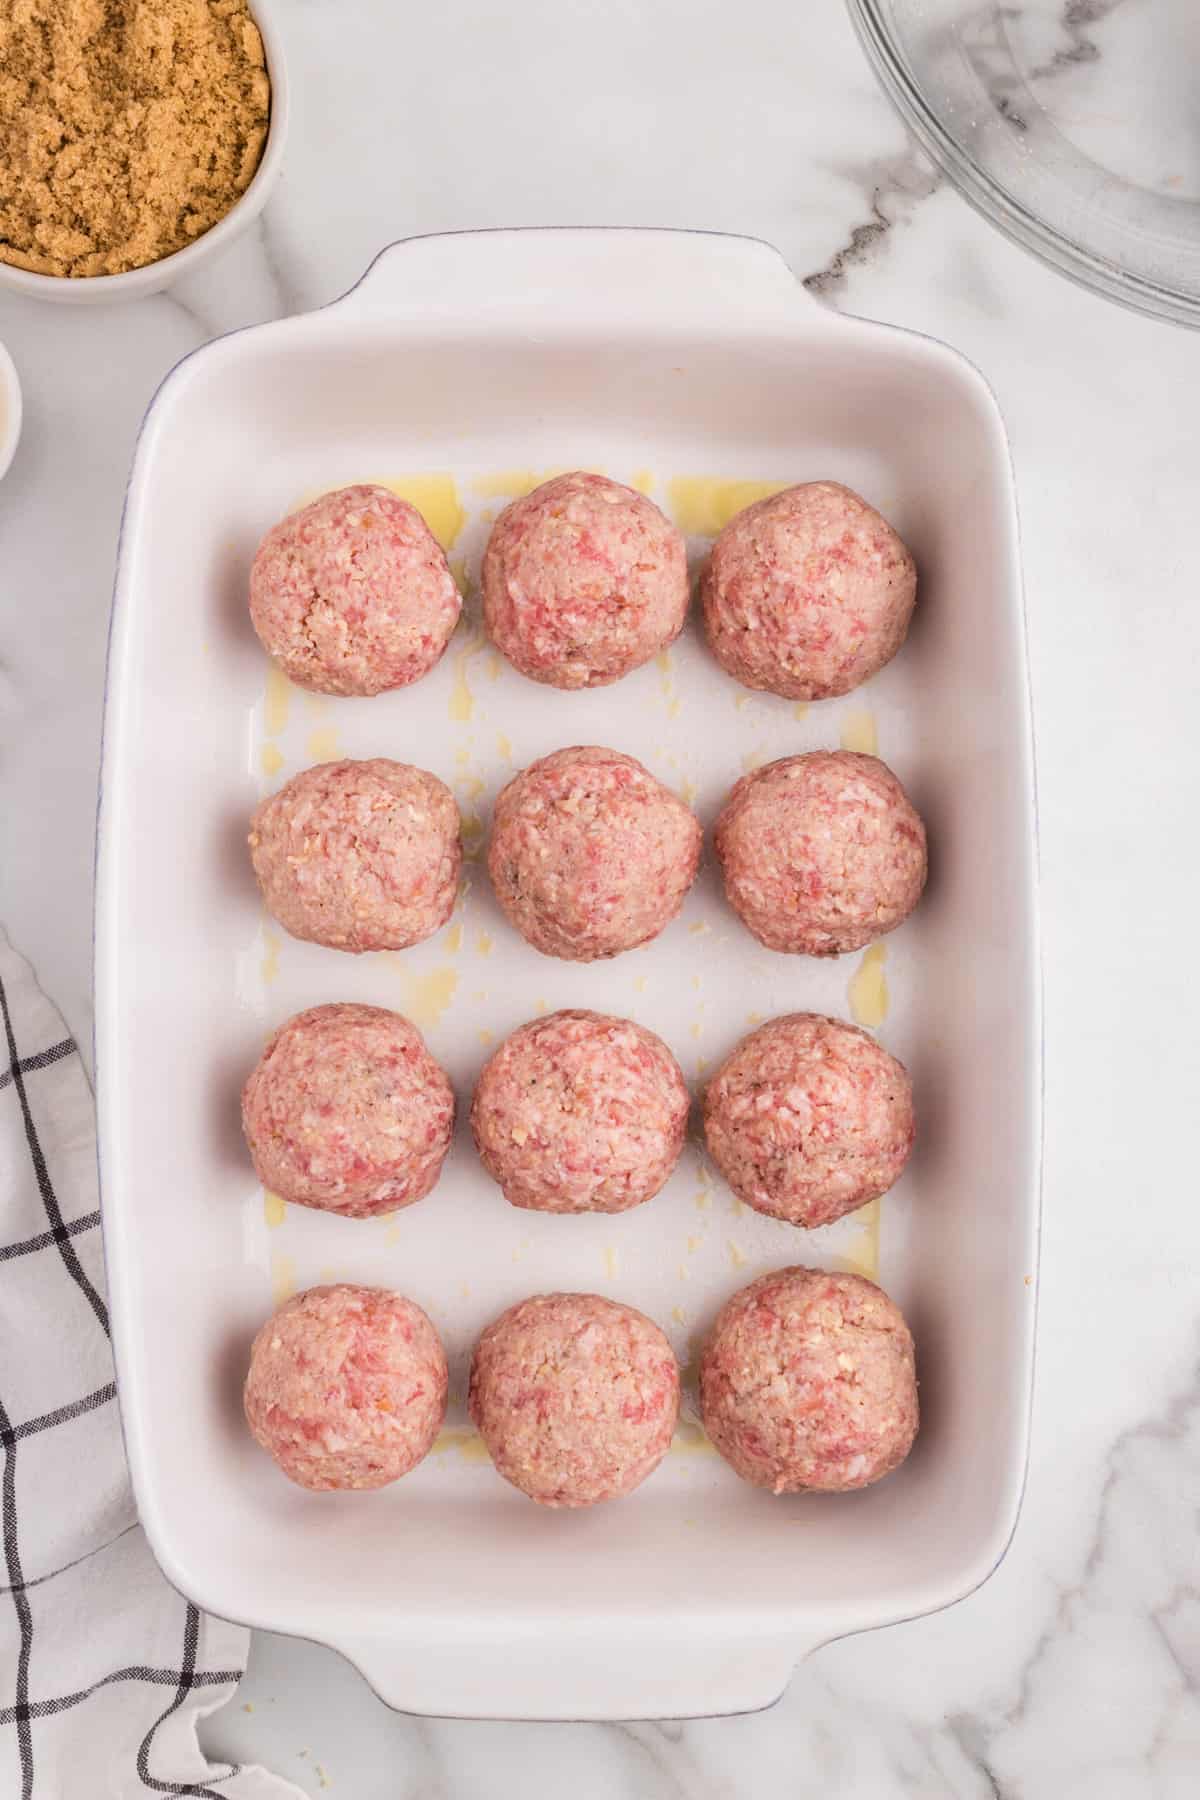 Ham Balls in 9x13 baking dish